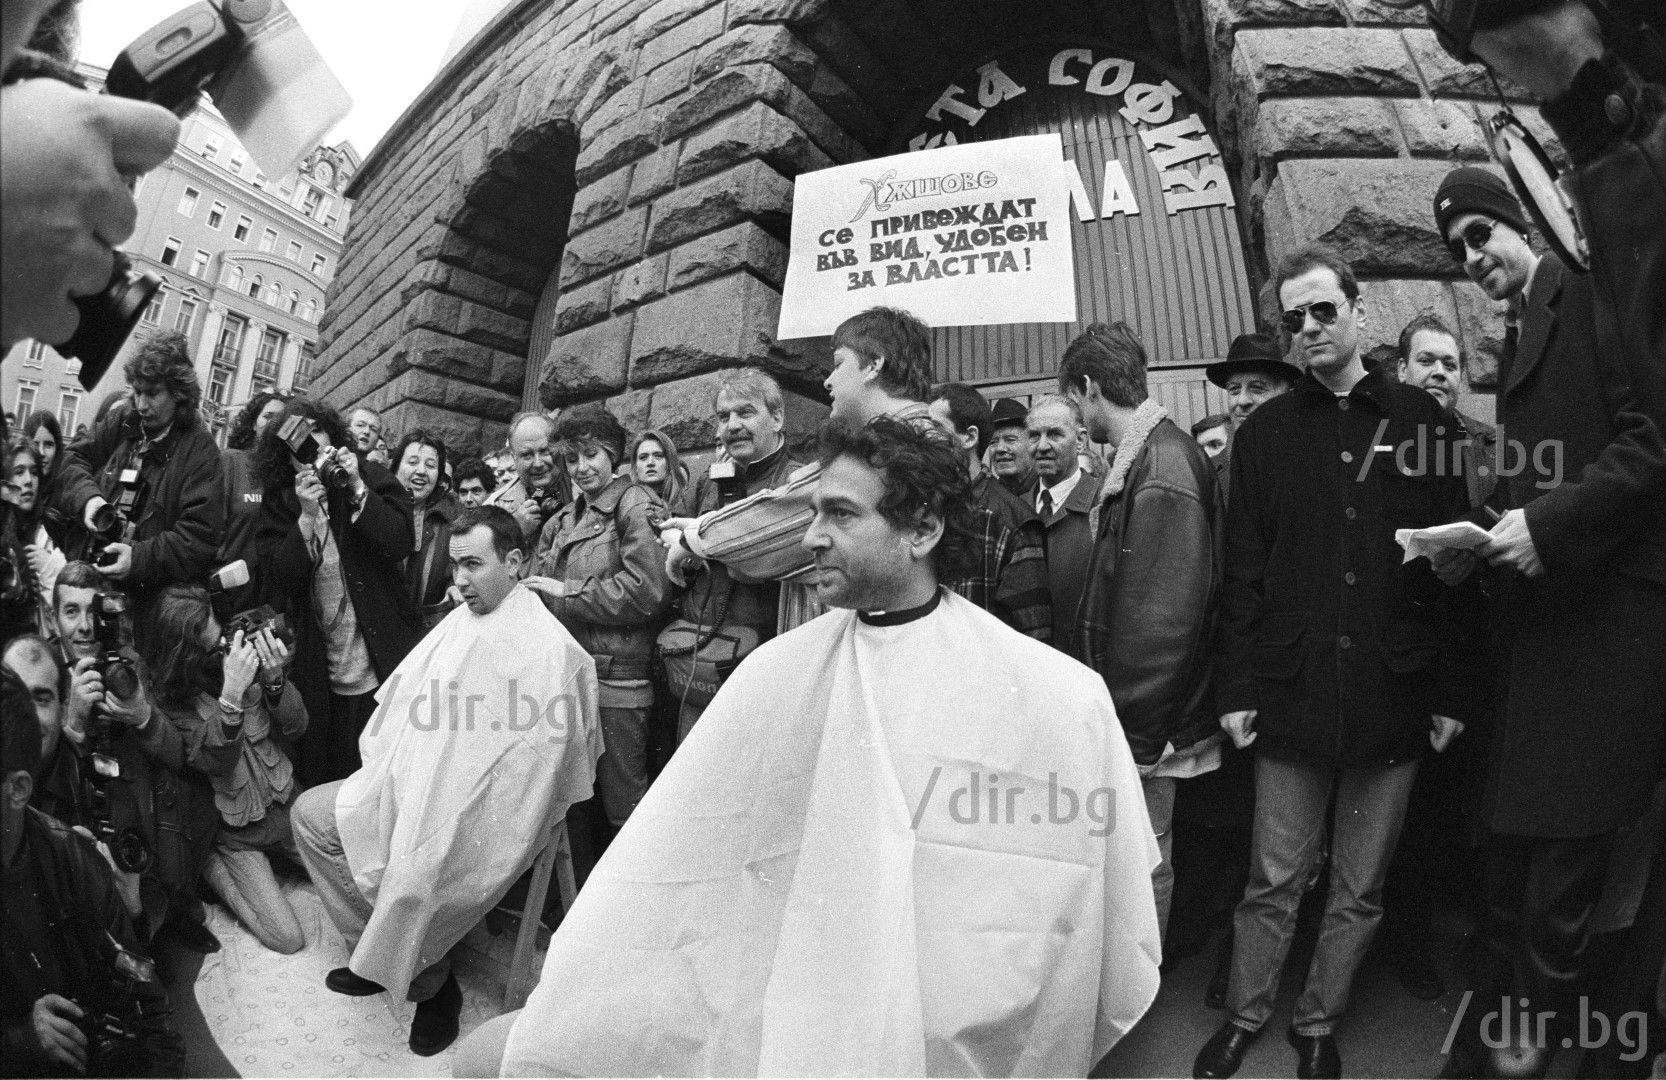 На 19 февруари 1998 година след цикъл обществени акции, всички сценаристи на „Хъшове“, си остригват публично главите на Ларгото между Министерския съвет и Президентството в знак на протест срещу цензурата в националните медии